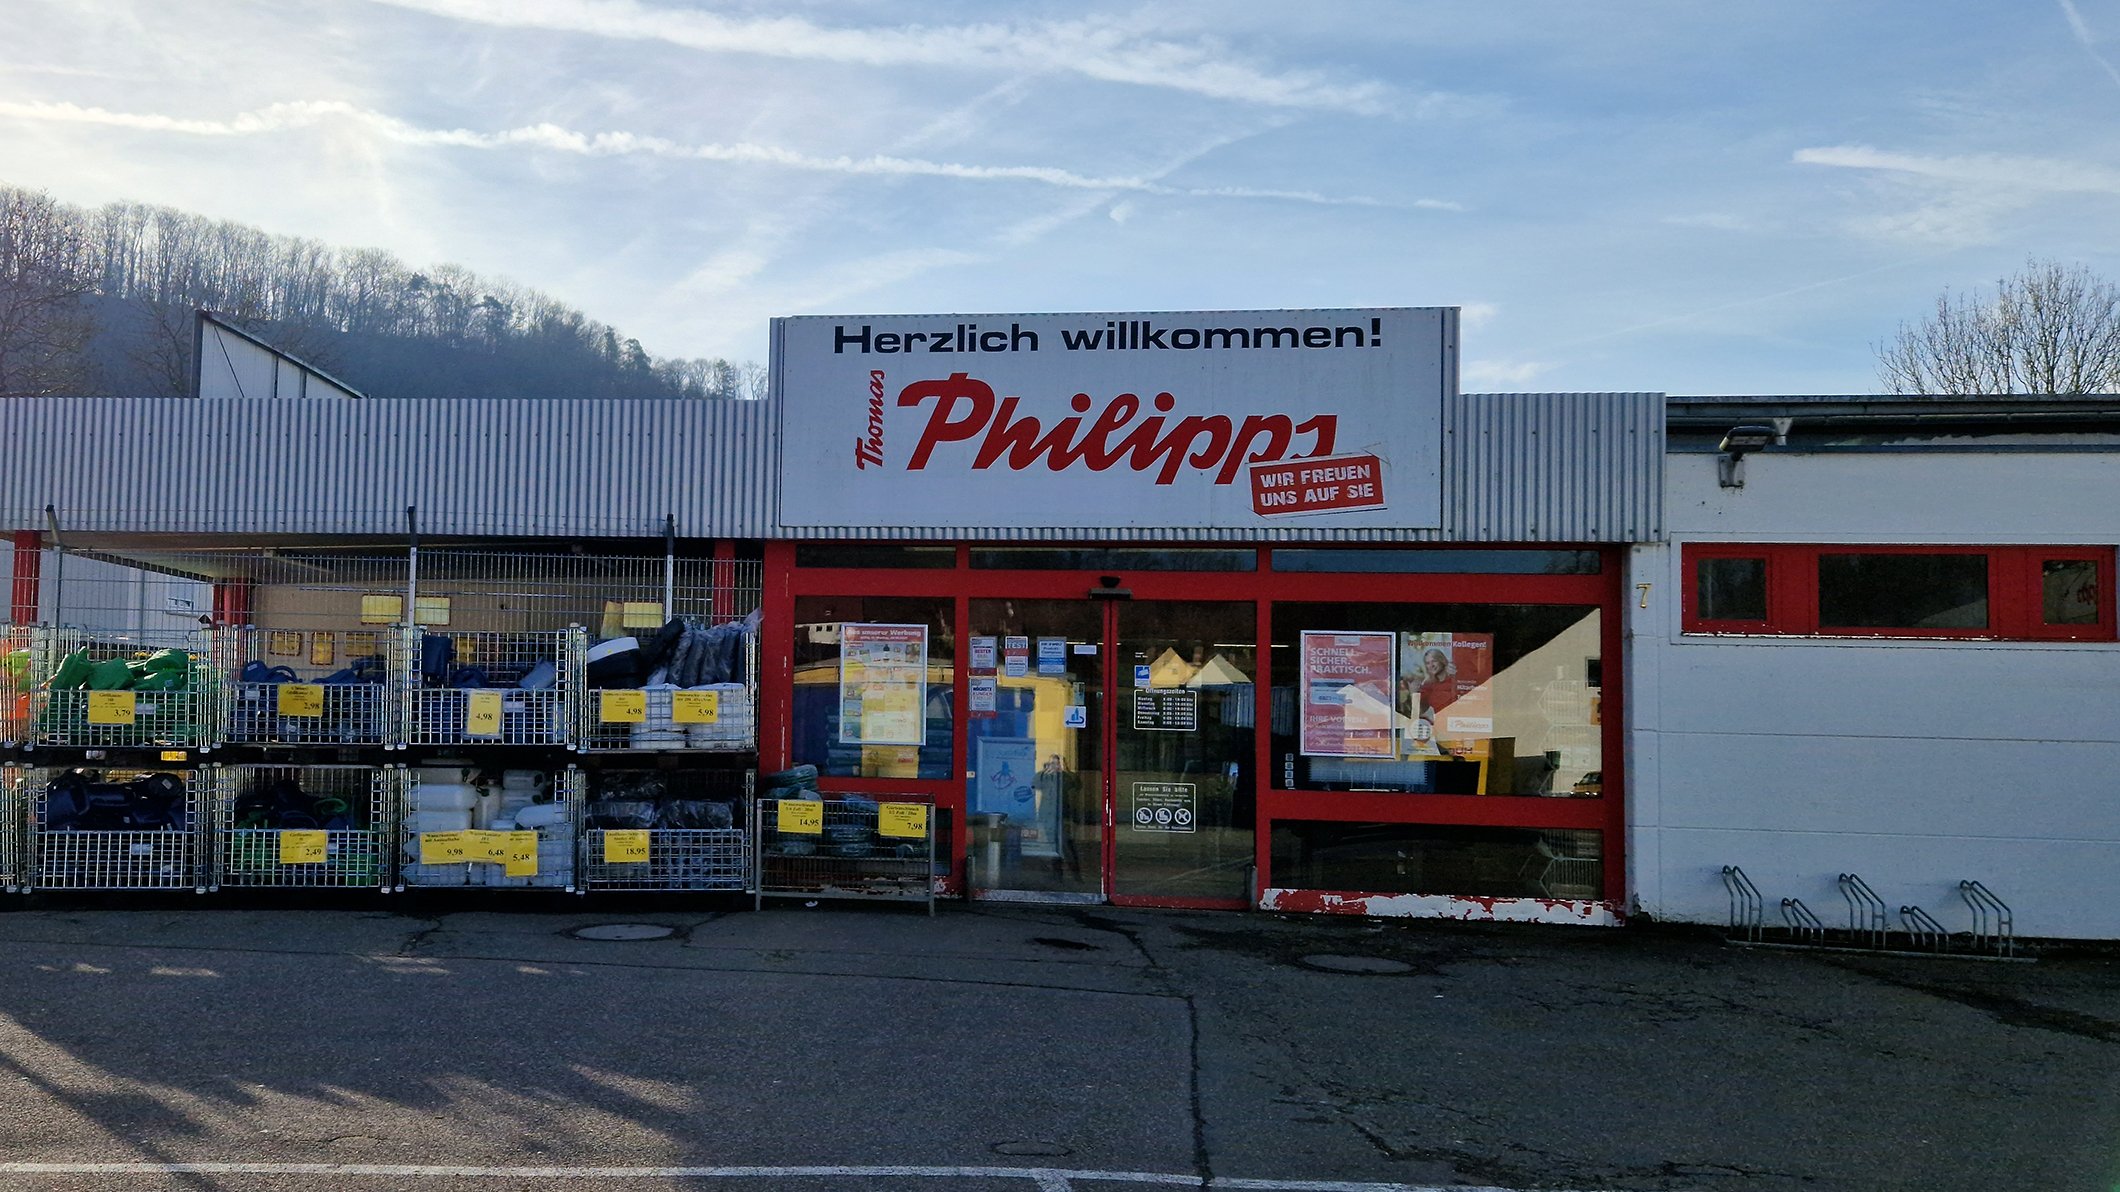 Auto- & Motorradzubehör günstig kaufen bei Thomas Philipps